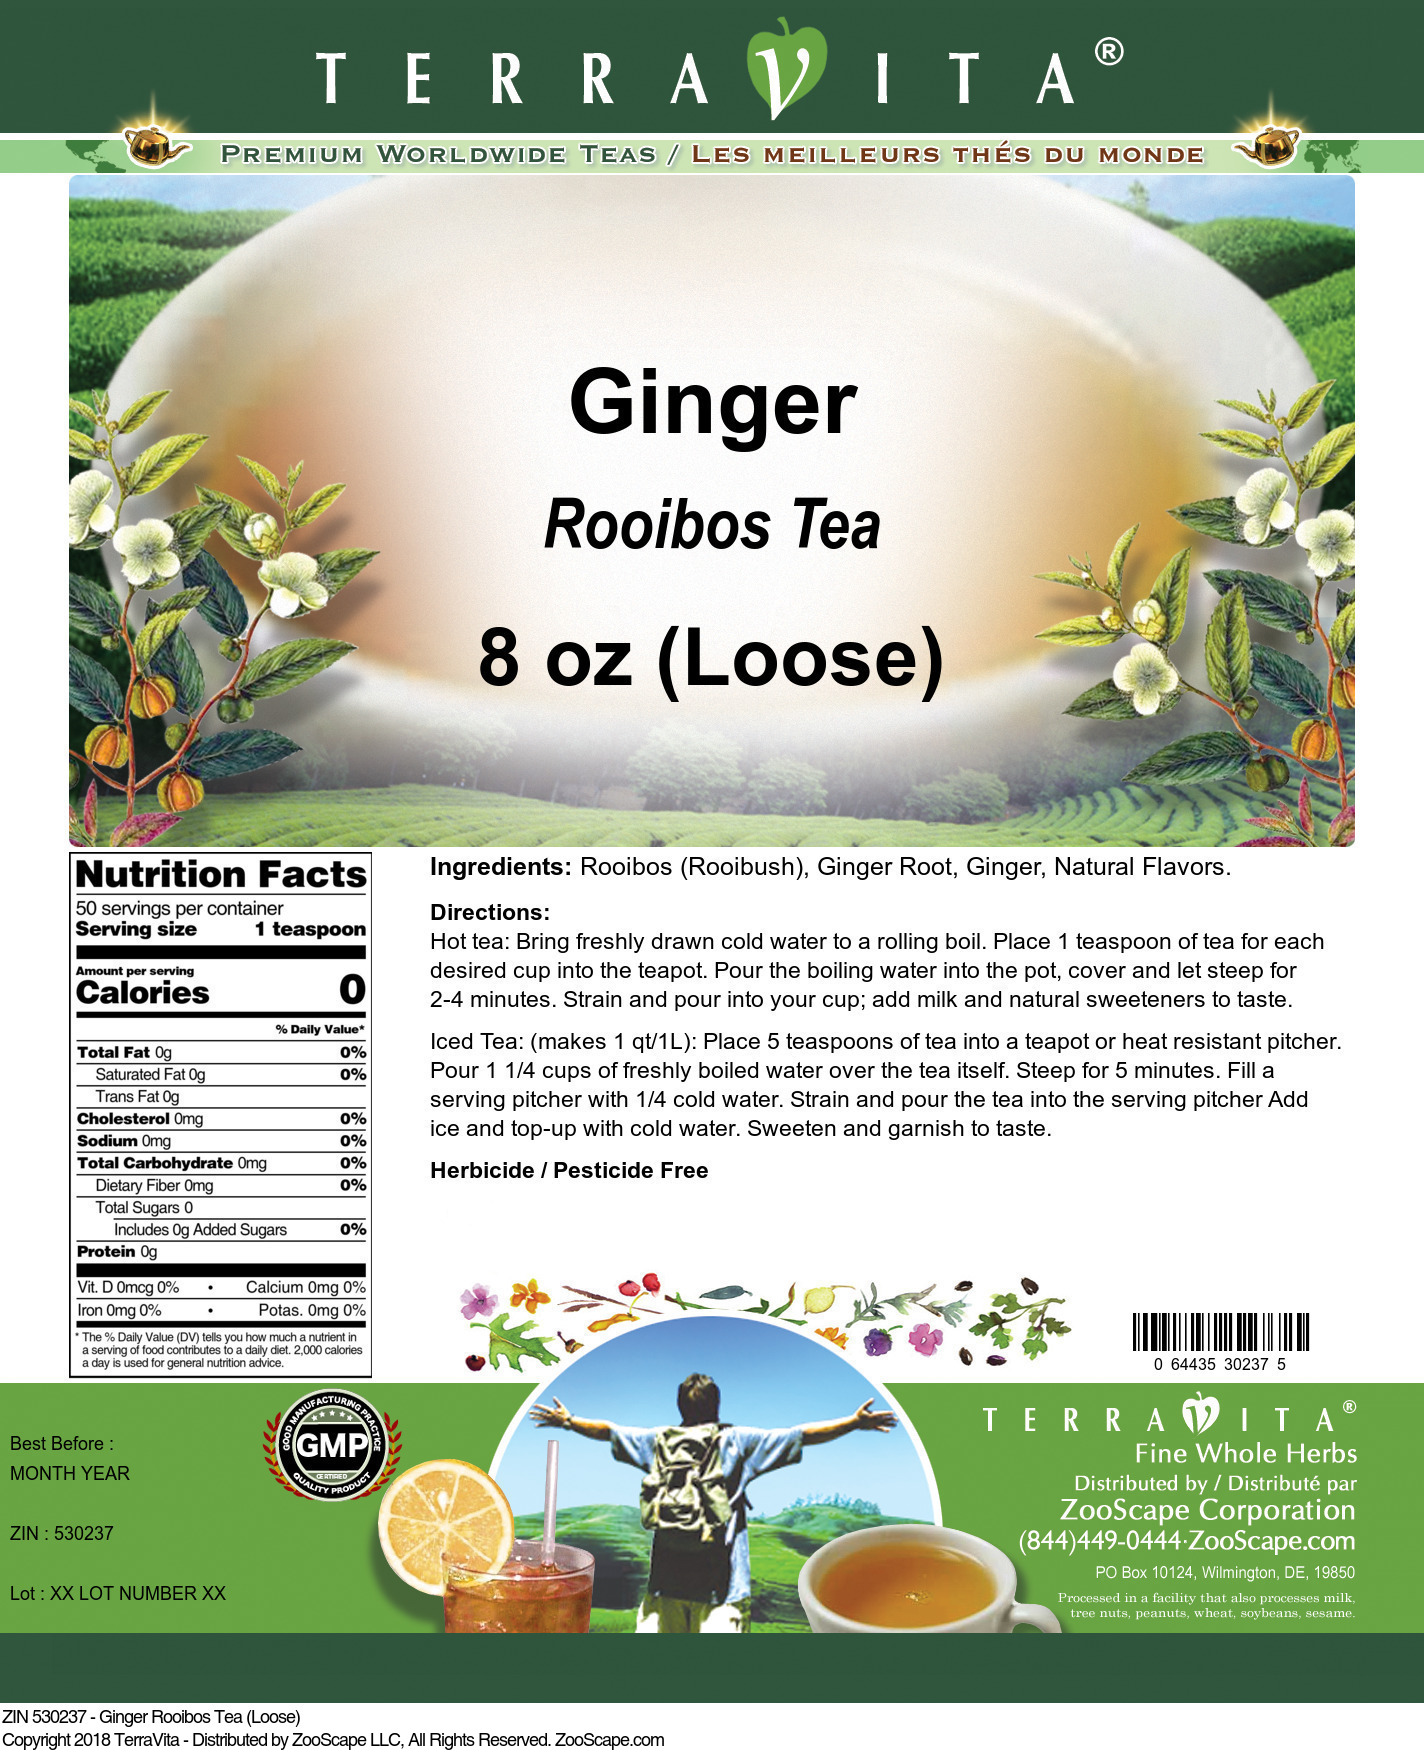 Ginger Rooibos Tea (Loose) - Label